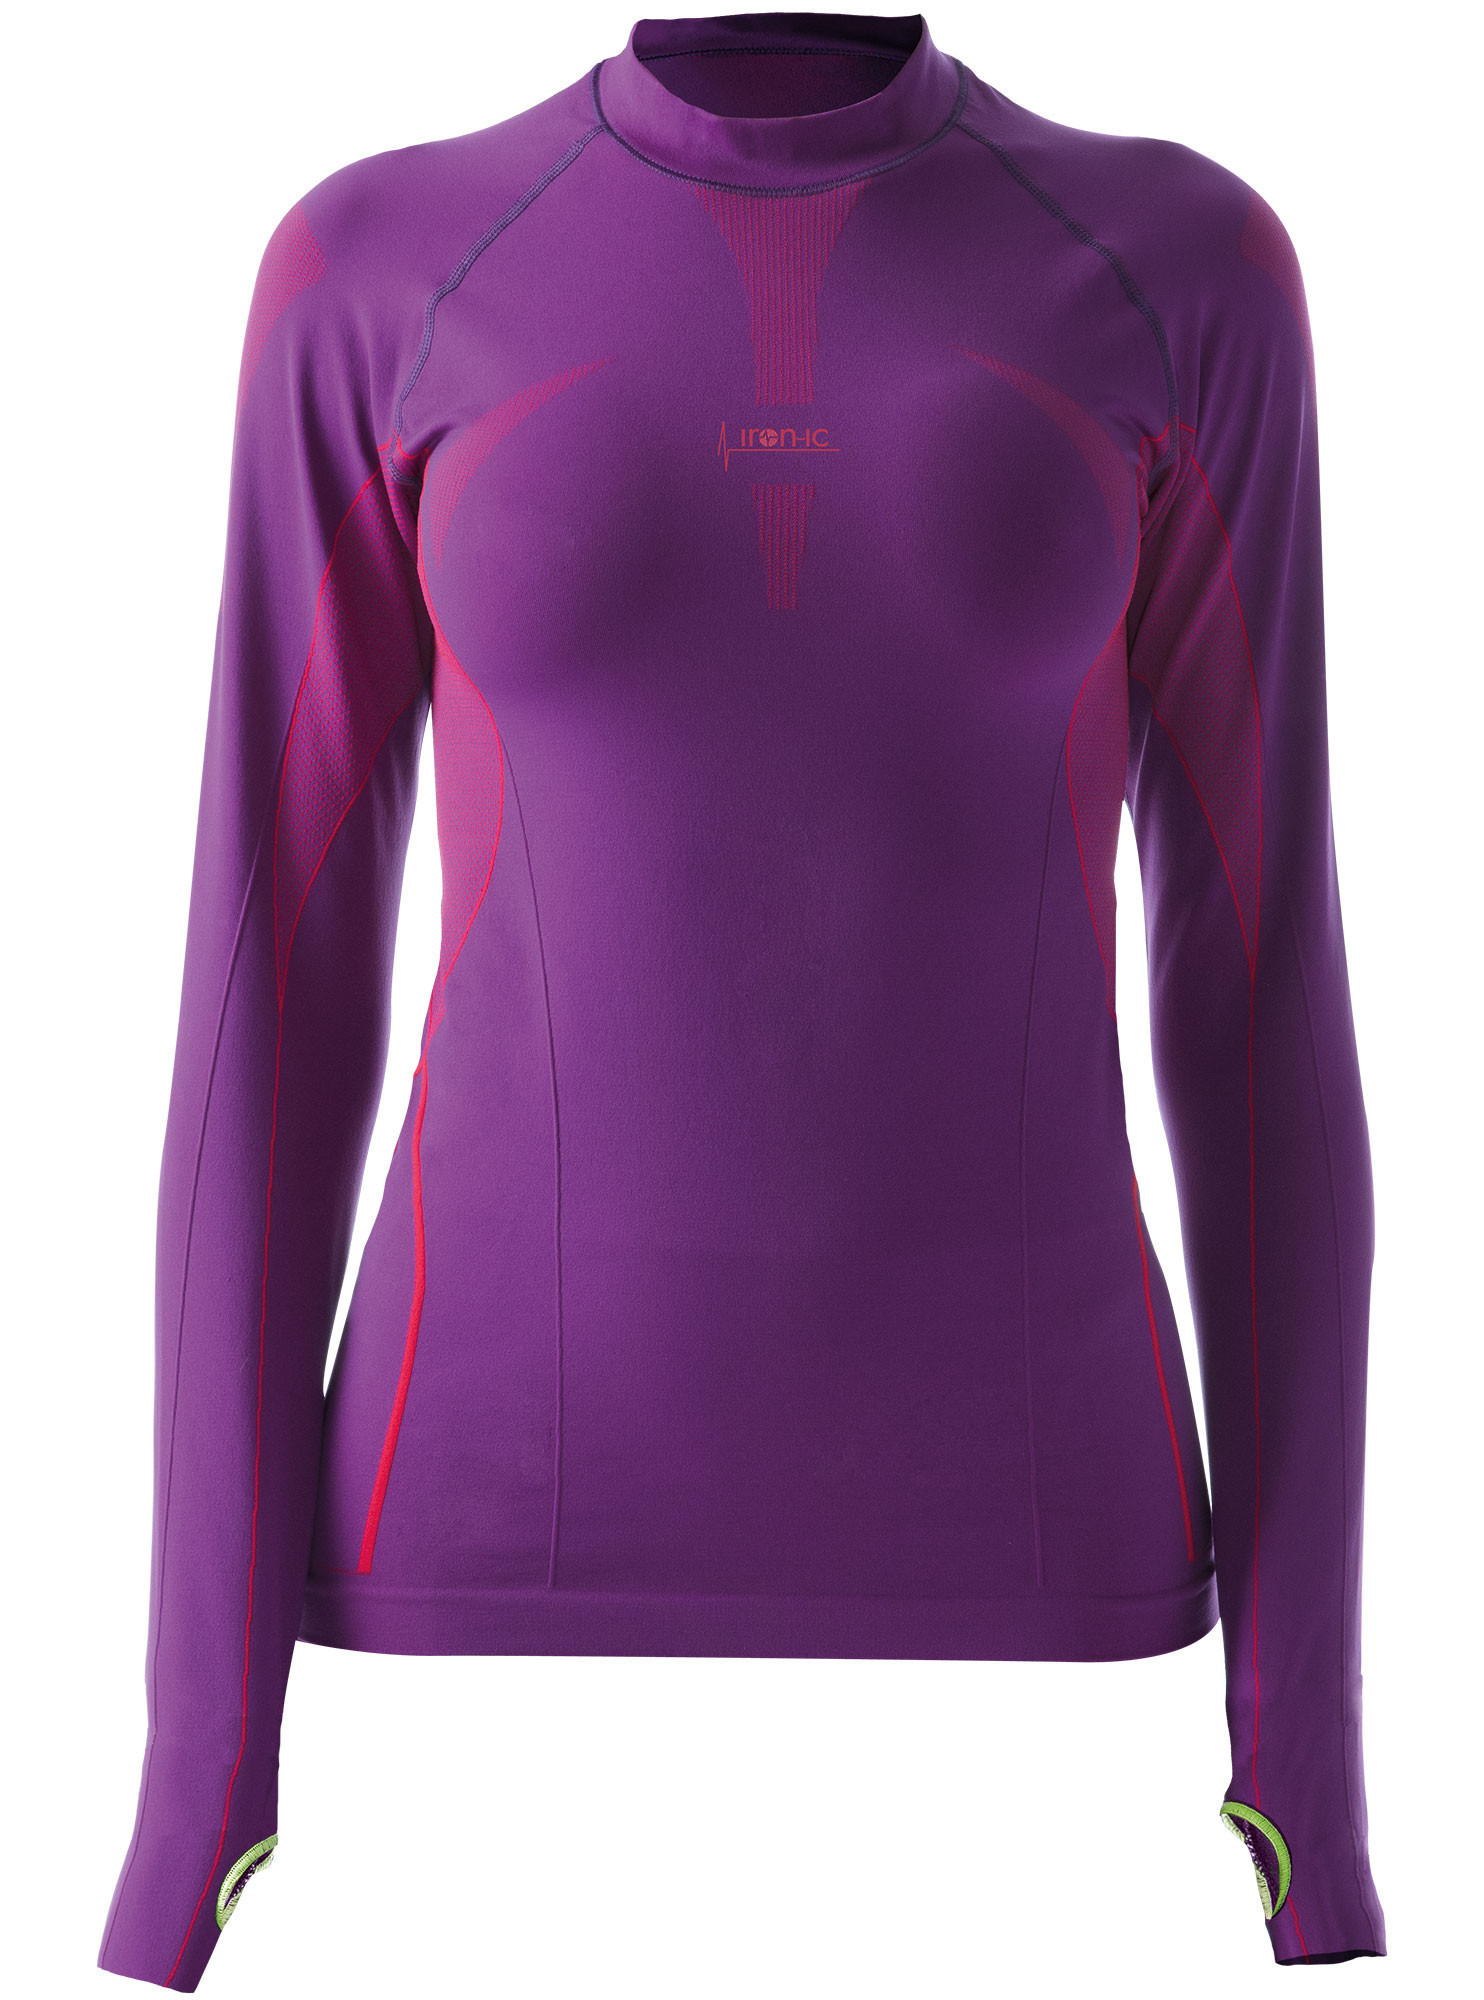 Dámské sportovní tričko s dlouhým rukávem IRON-IC - fialová Barva: Violet NY, Velikost: L/XL